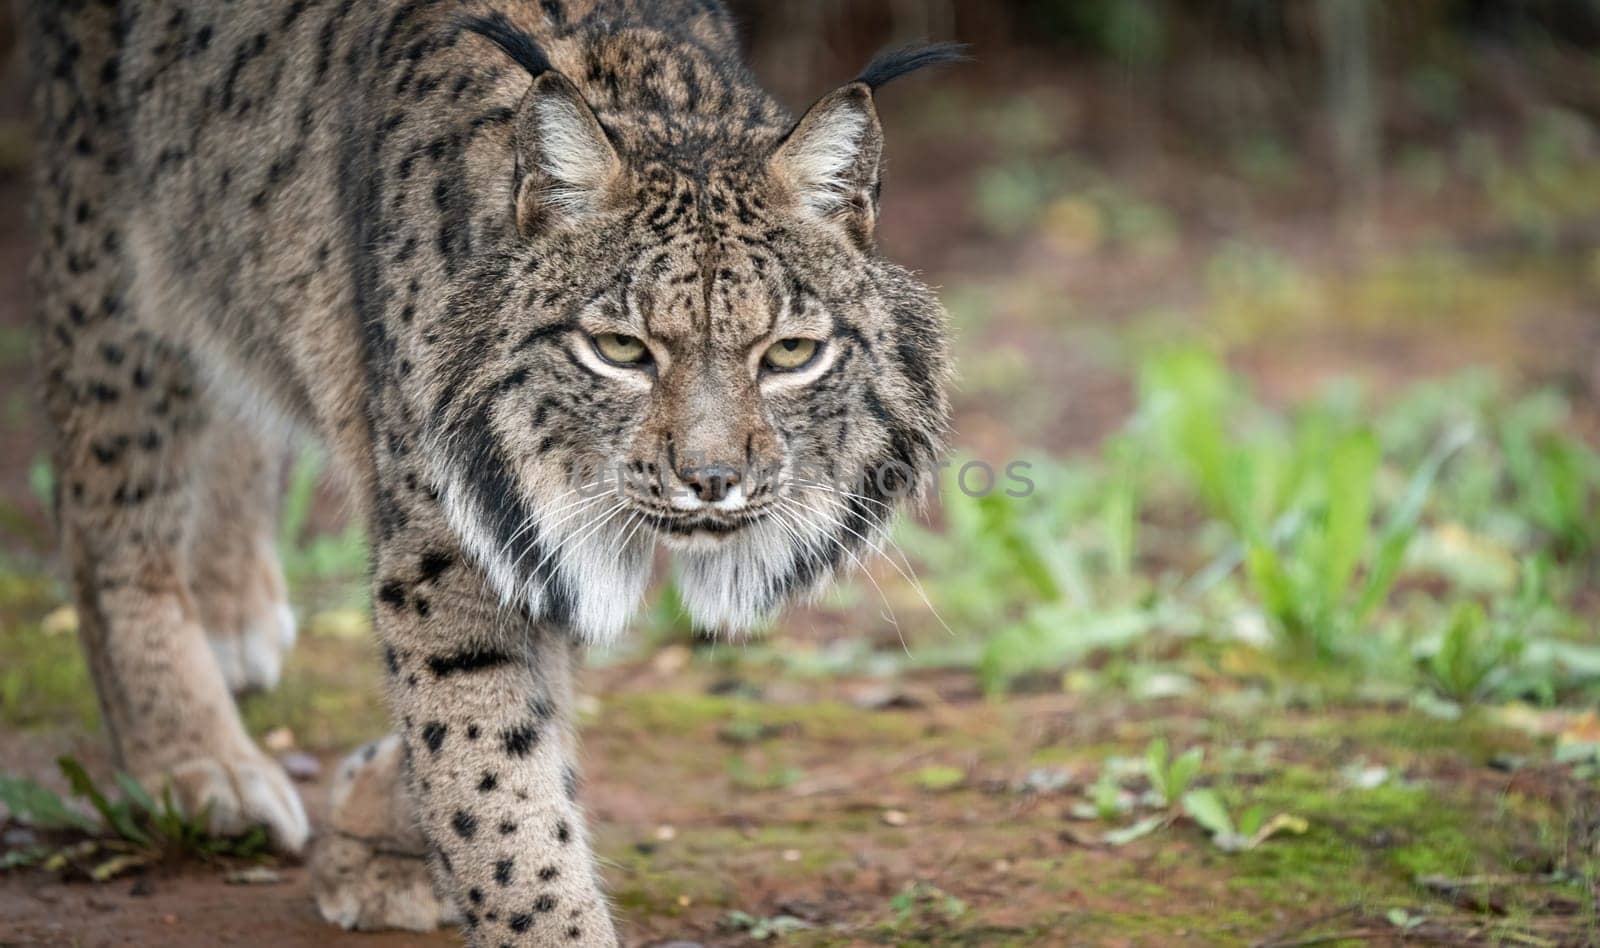 Intense Gaze of a Wild Lynx Walking in the Woods by FerradalFCG